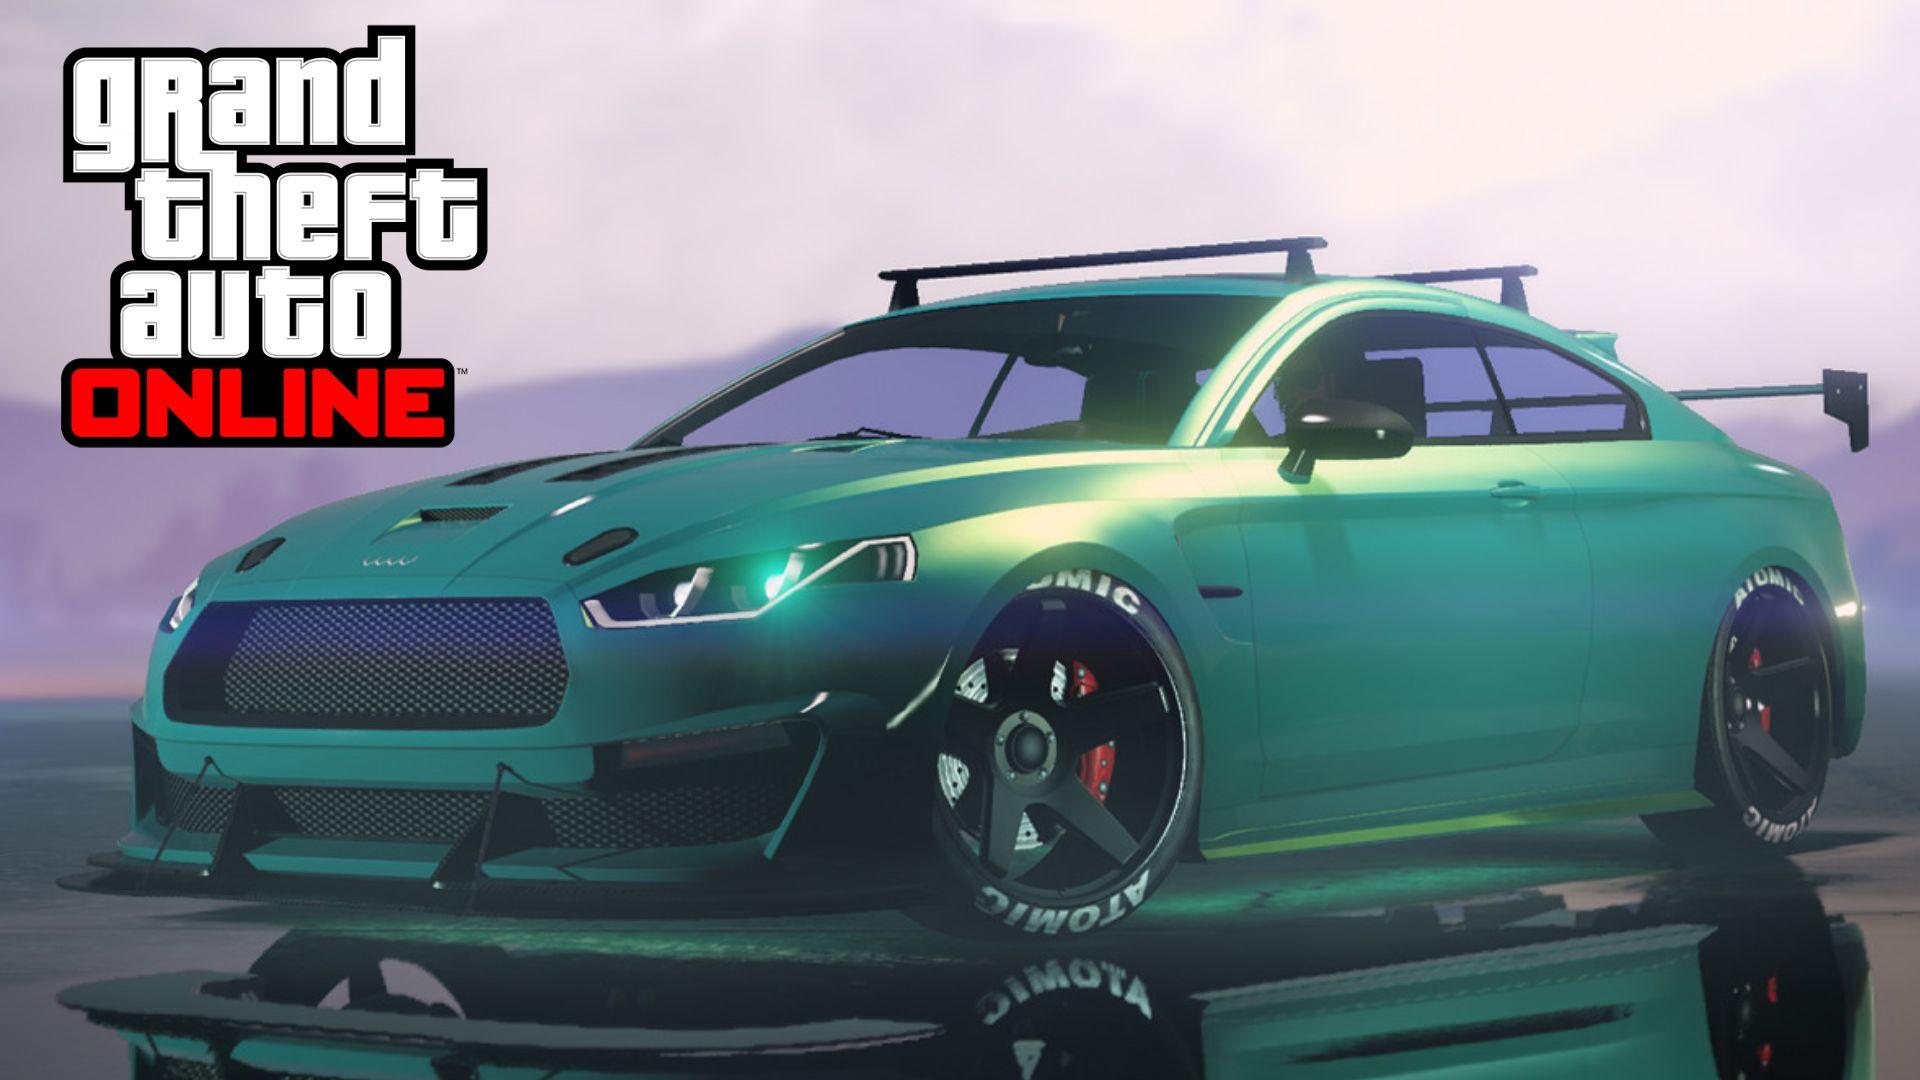 Green Obey 8F Drafter parked up in GTA Online alongside logo